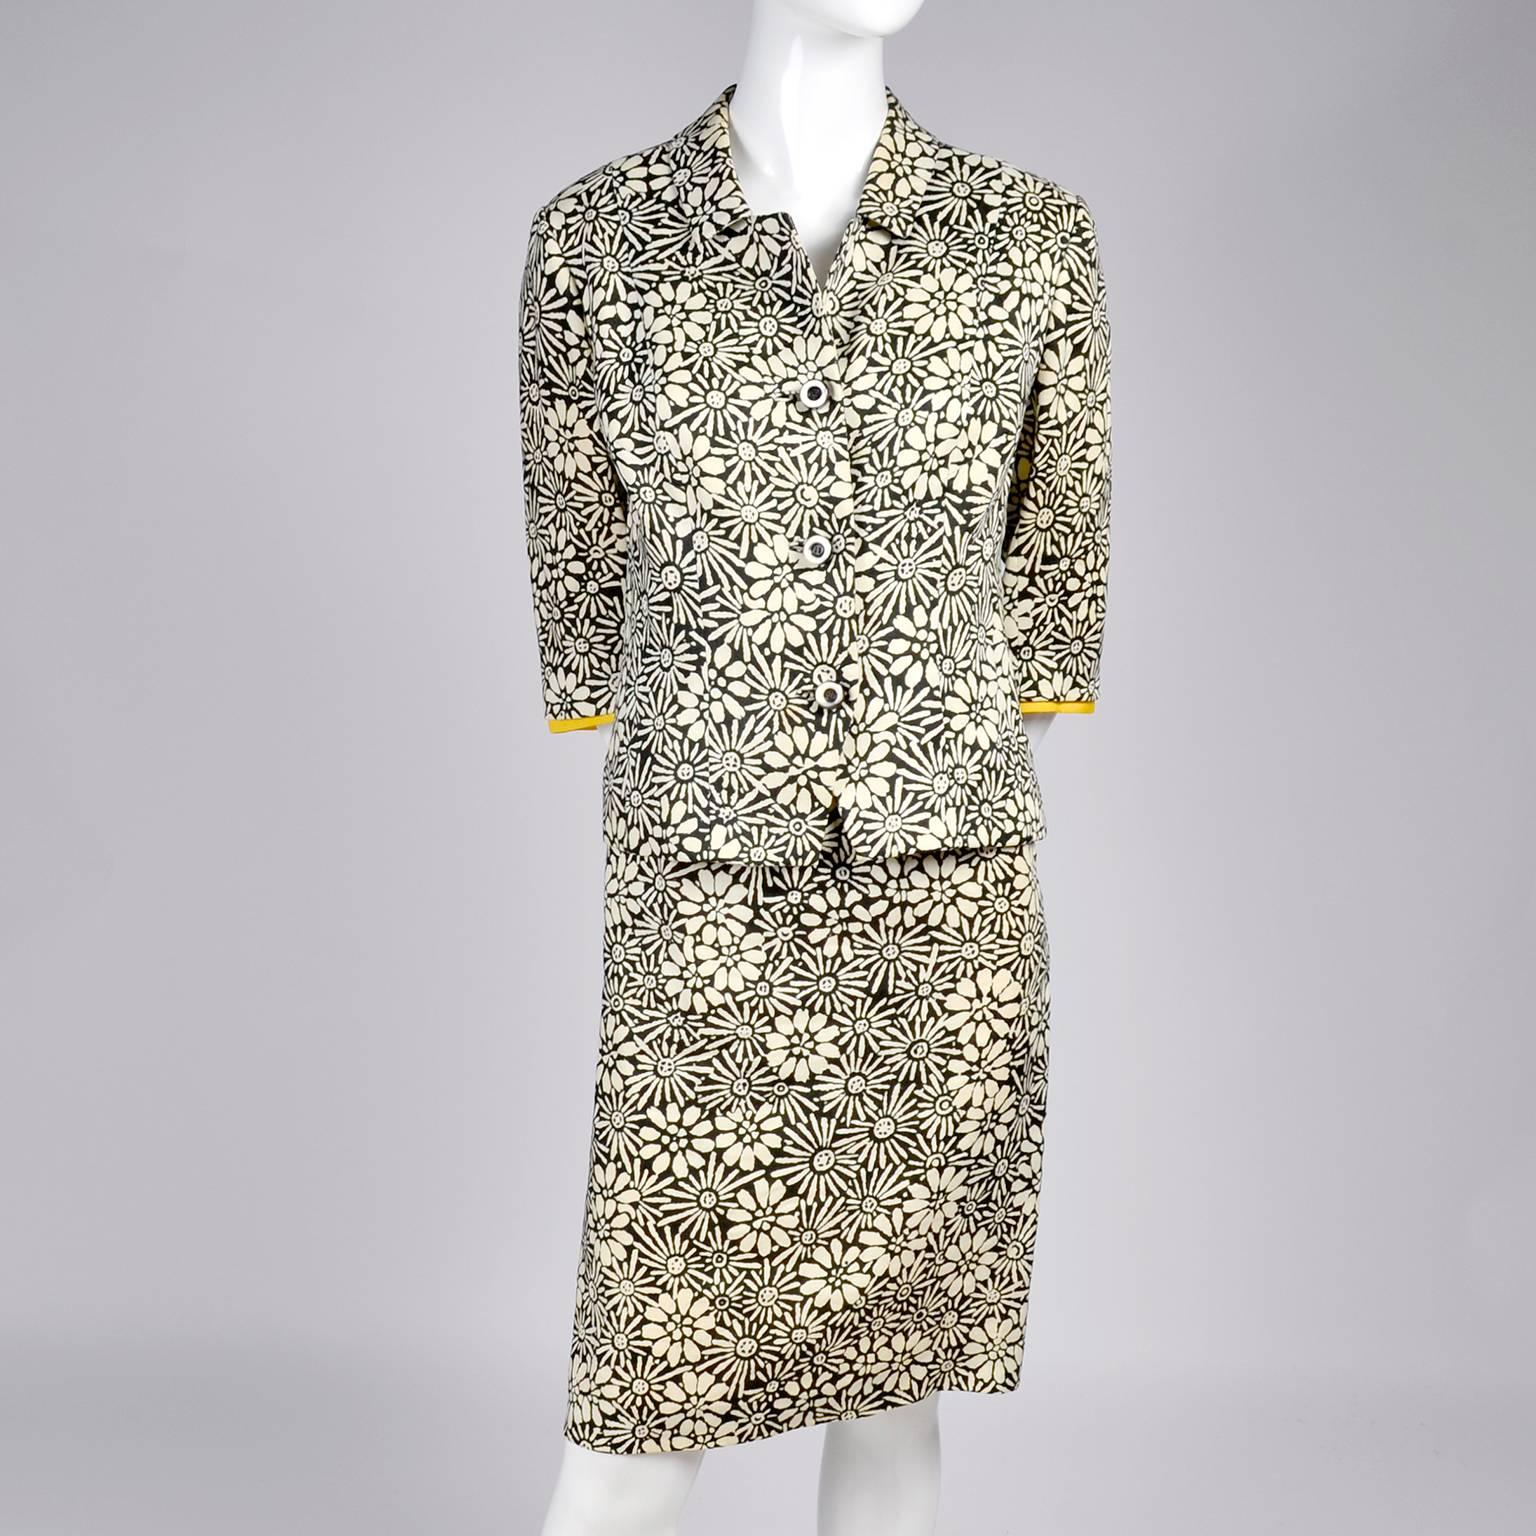 Women's Bullocks Wilshire 1960s Skirt Suit in Floral Linen Print W Marigold Yellow Trim